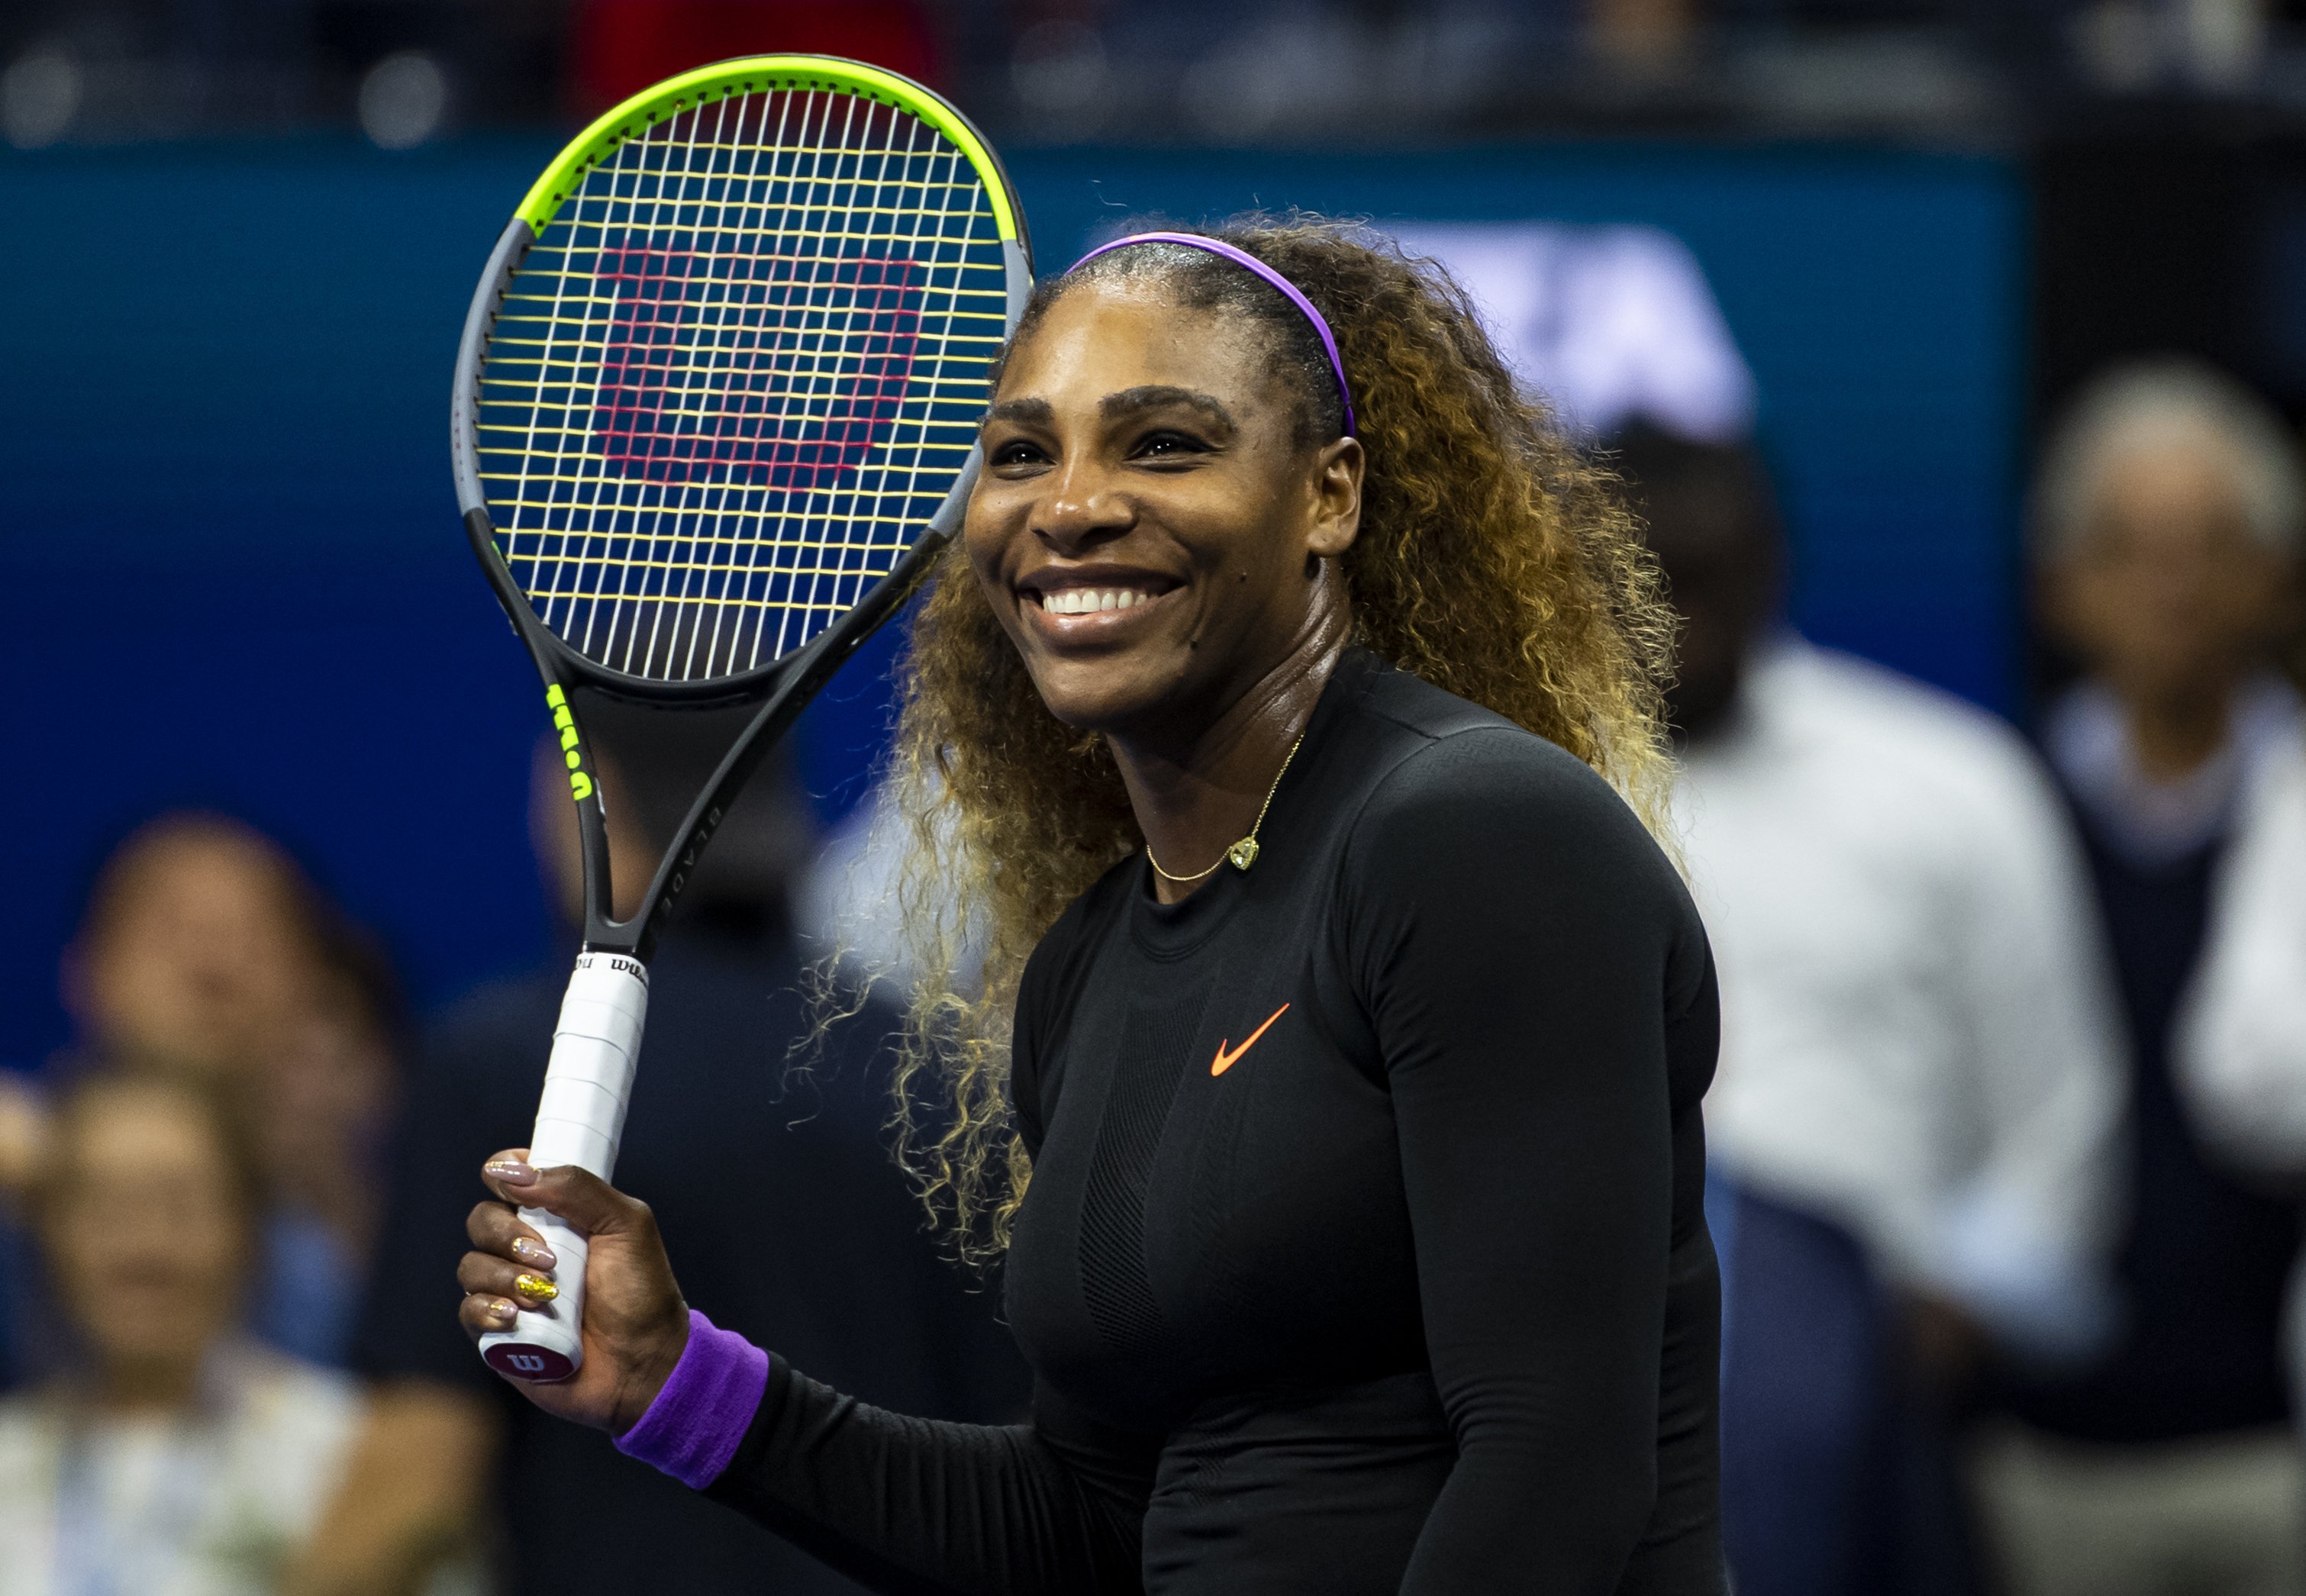 Serena Williams en el Centro Nacional de Tenis Billie Jean King de la USTA el 05 de septiembre de 2019 en la Ciudad de Nueva York. | Foto: Getty Images